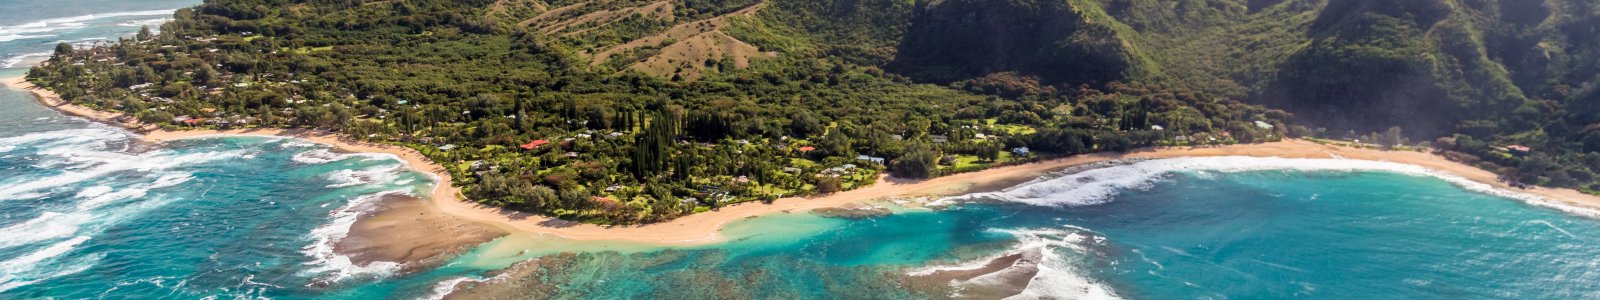 Summer Events in the Hawaiian Islands